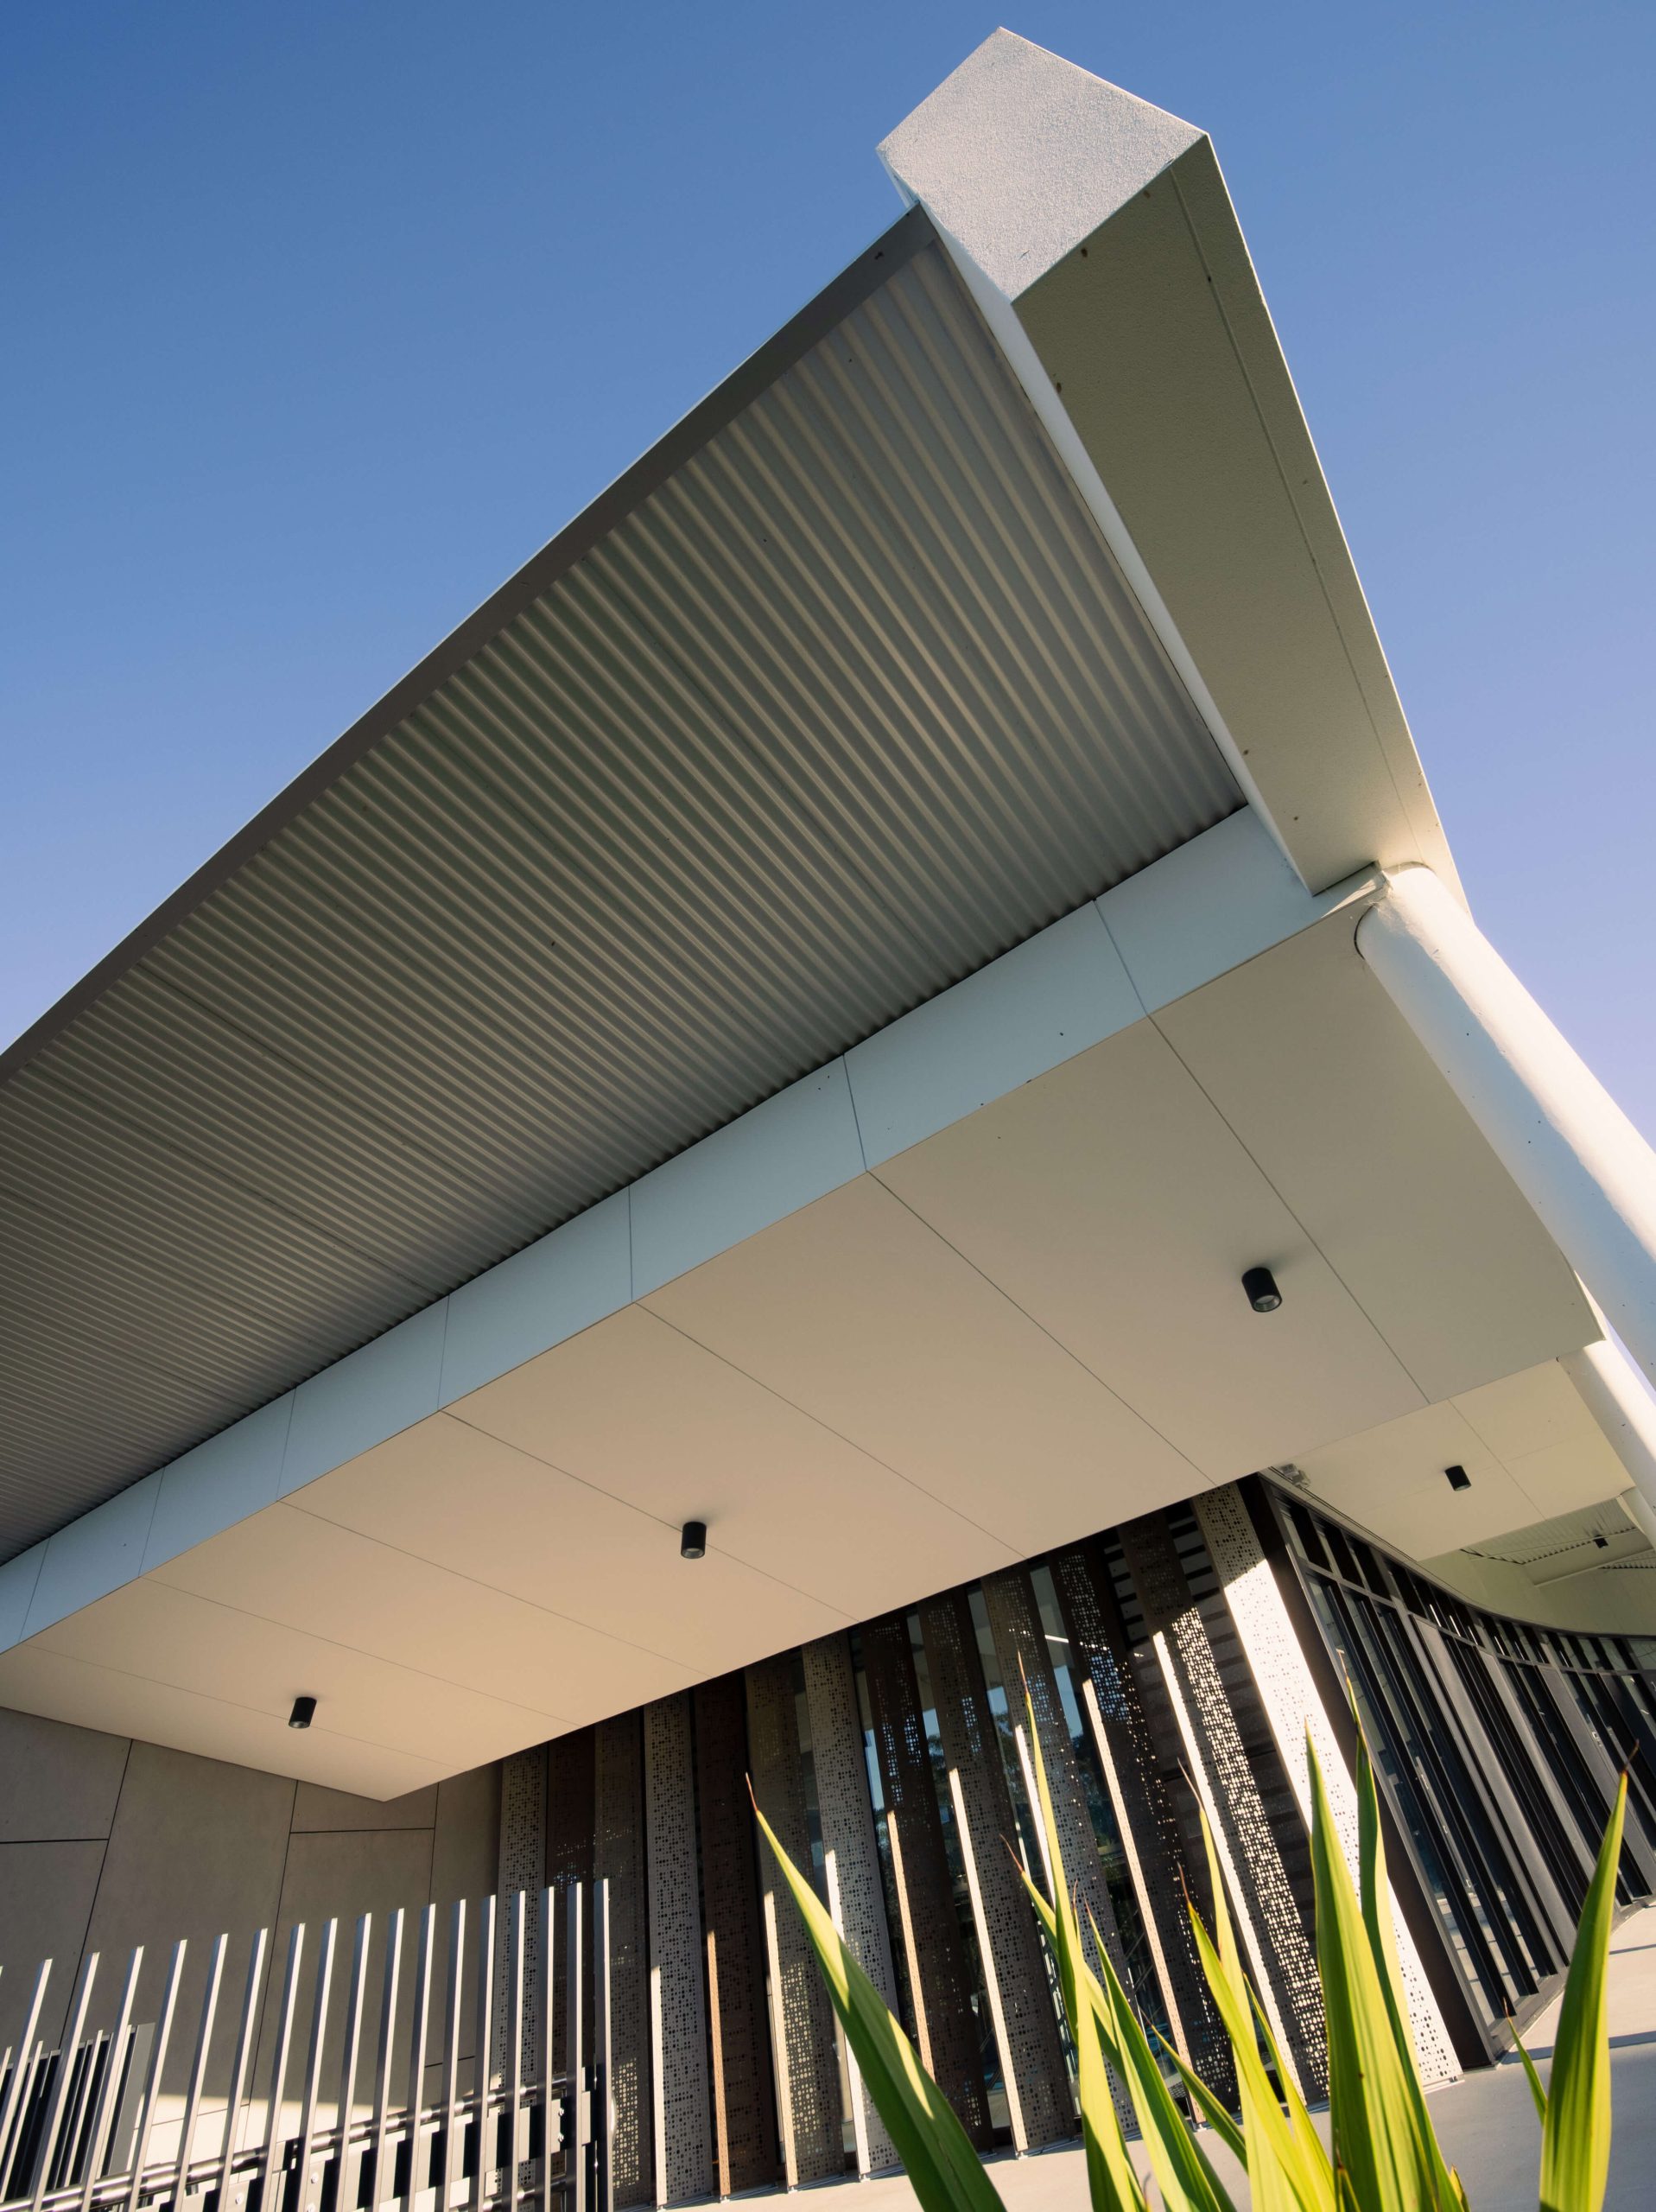 4 tara aquatic centre and sports precinct taylor construction new build education exterior ceiling